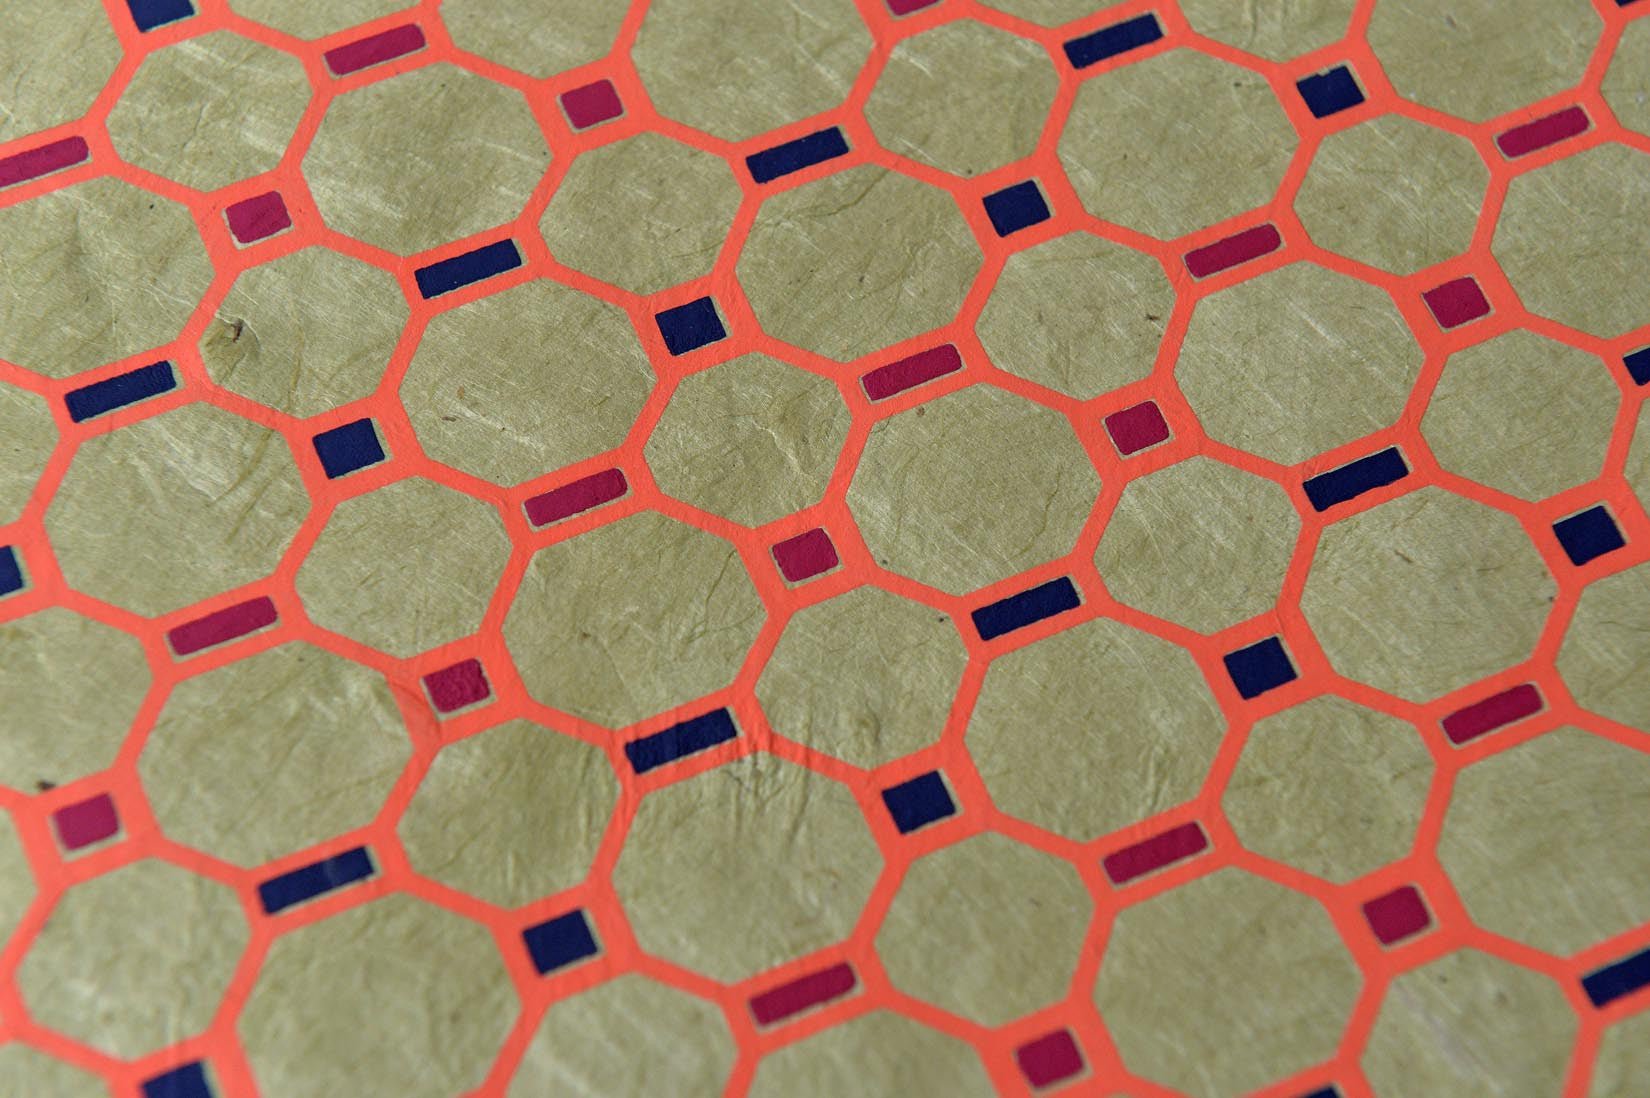 Hexagons-hand made paper - Natalia Willmott